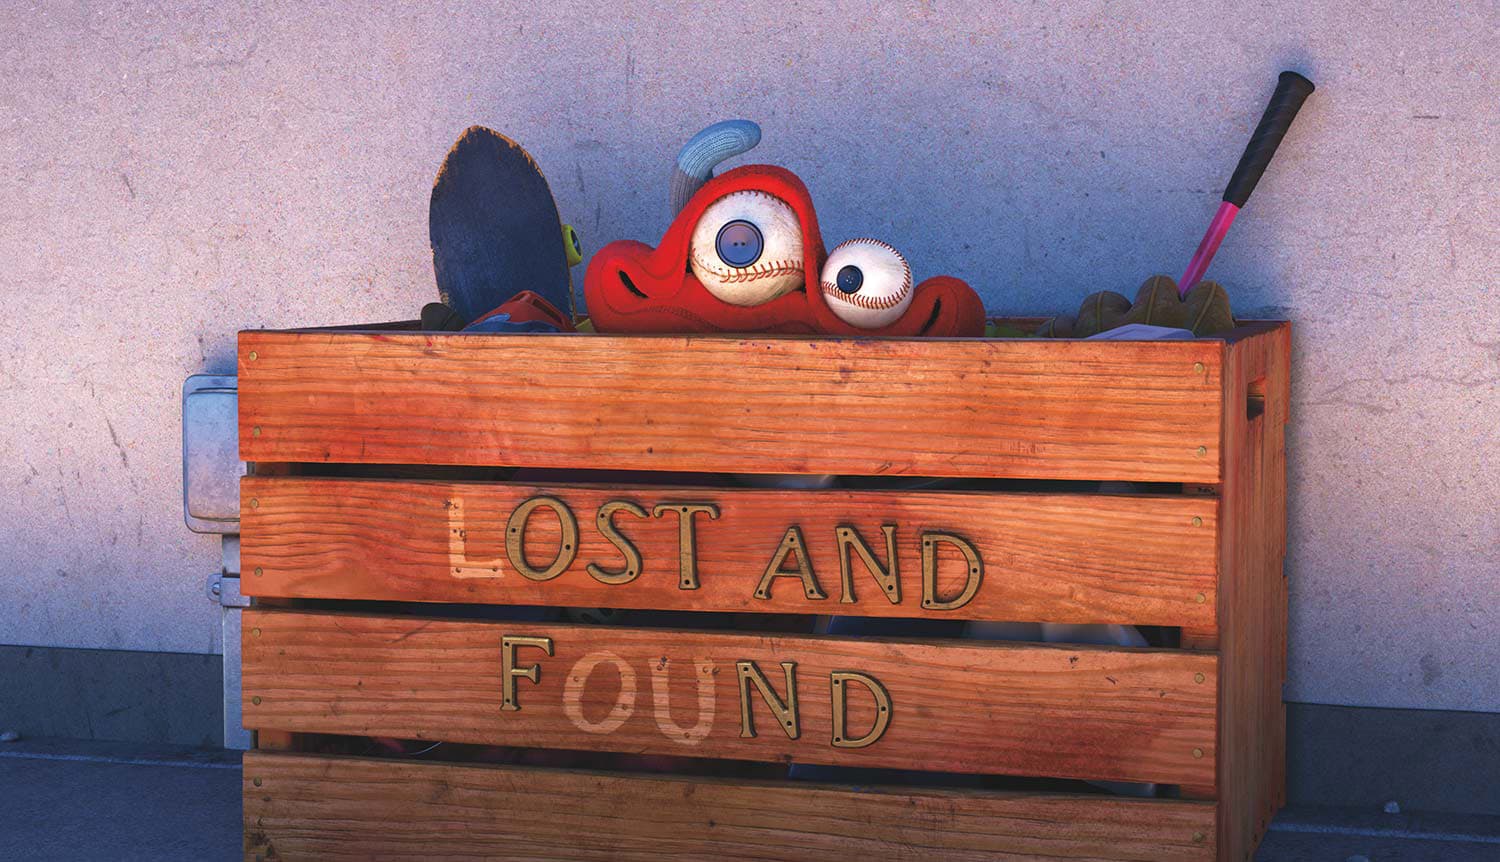 Короткометражные фильмы Pixar — список лучшей анимации